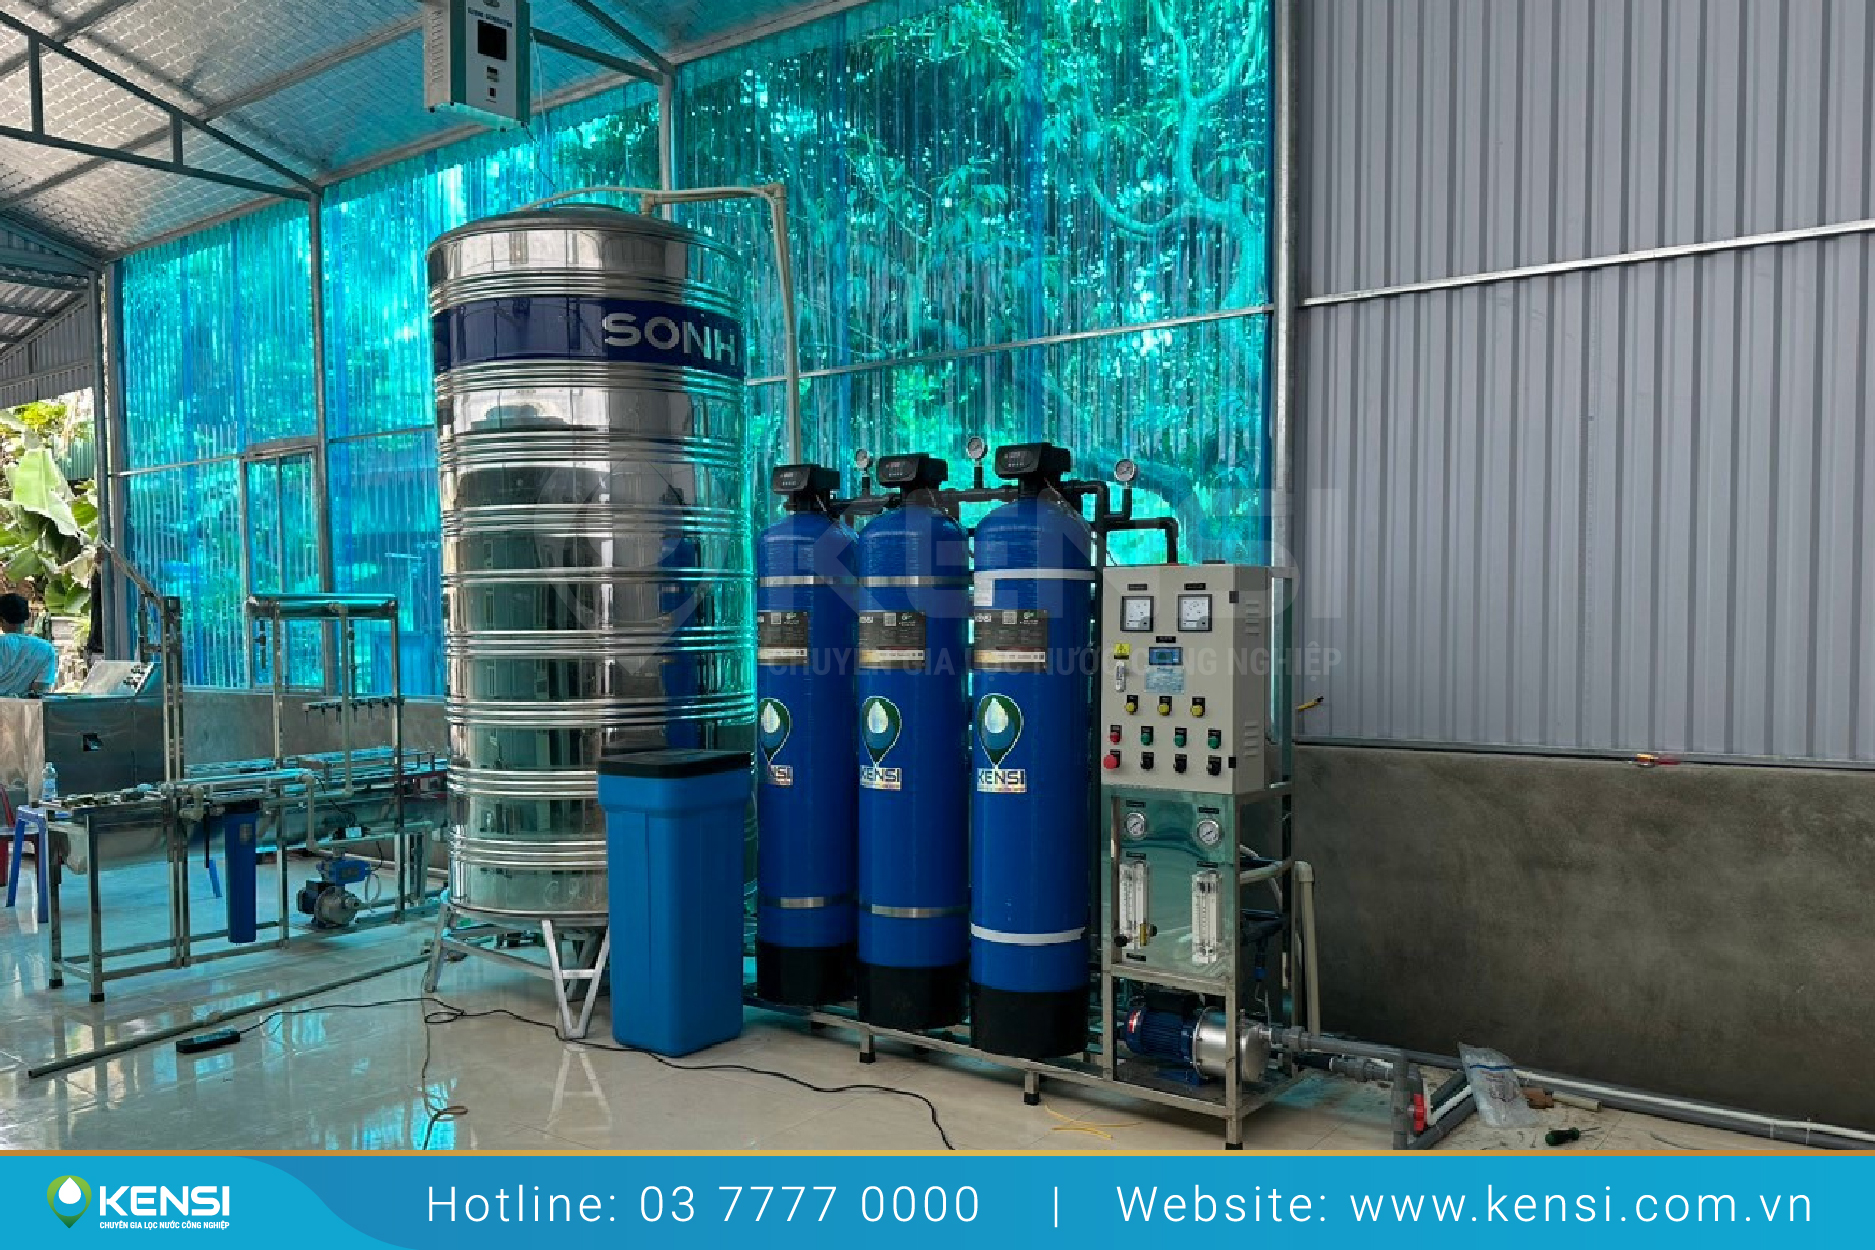 Ứng dụng của hệ thống lọc nước RO cho sản xuất nước đóng bình